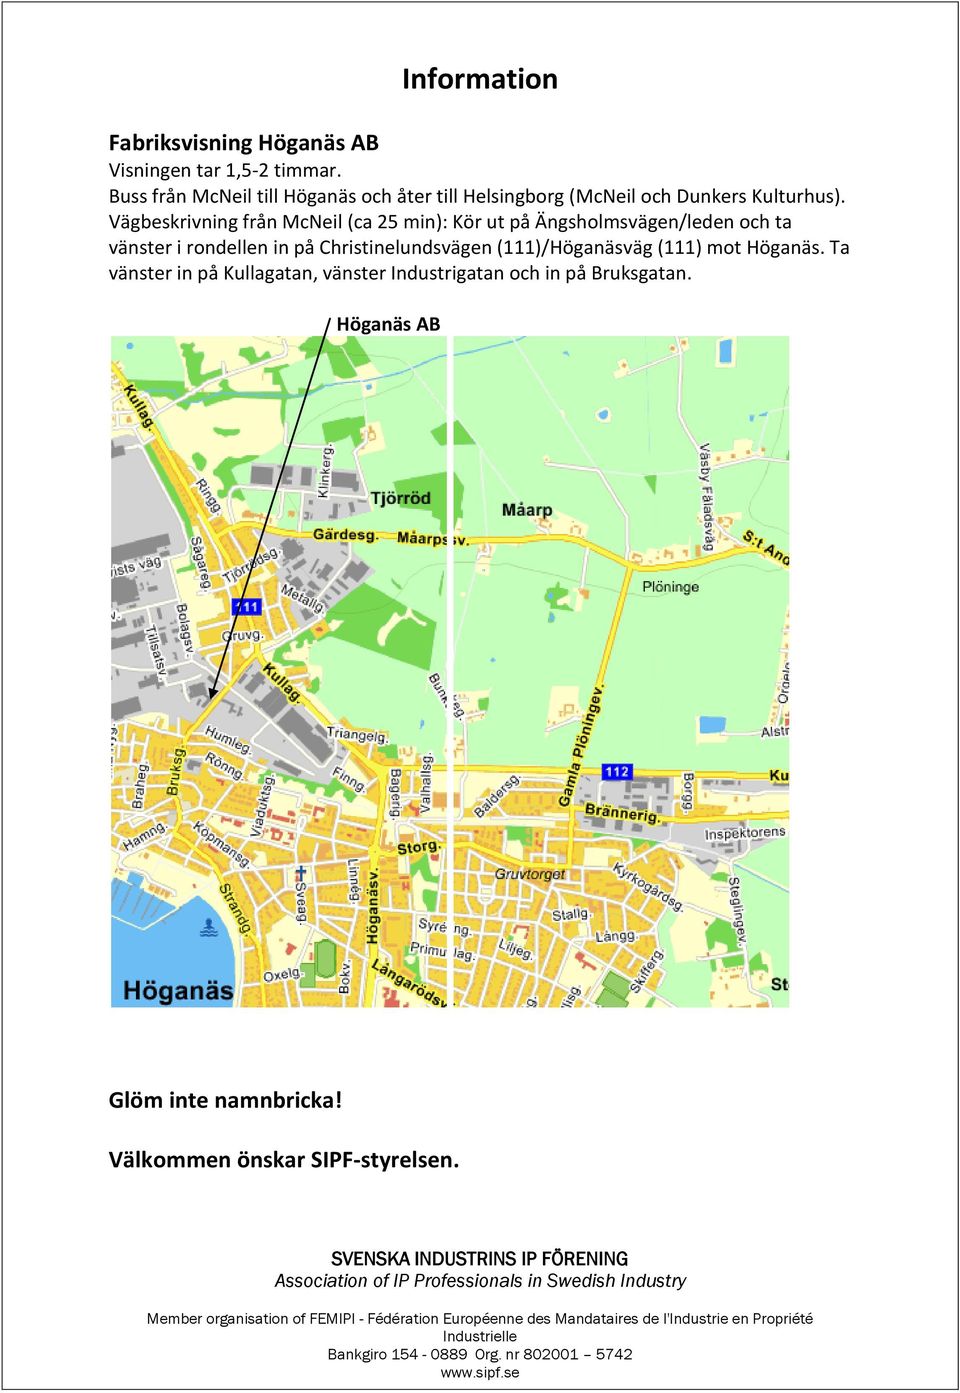 Vägbeskrivning från McNeil (ca 25 min): Kör ut på Ängsholmsvägen/leden och ta vänster i rondellen in på